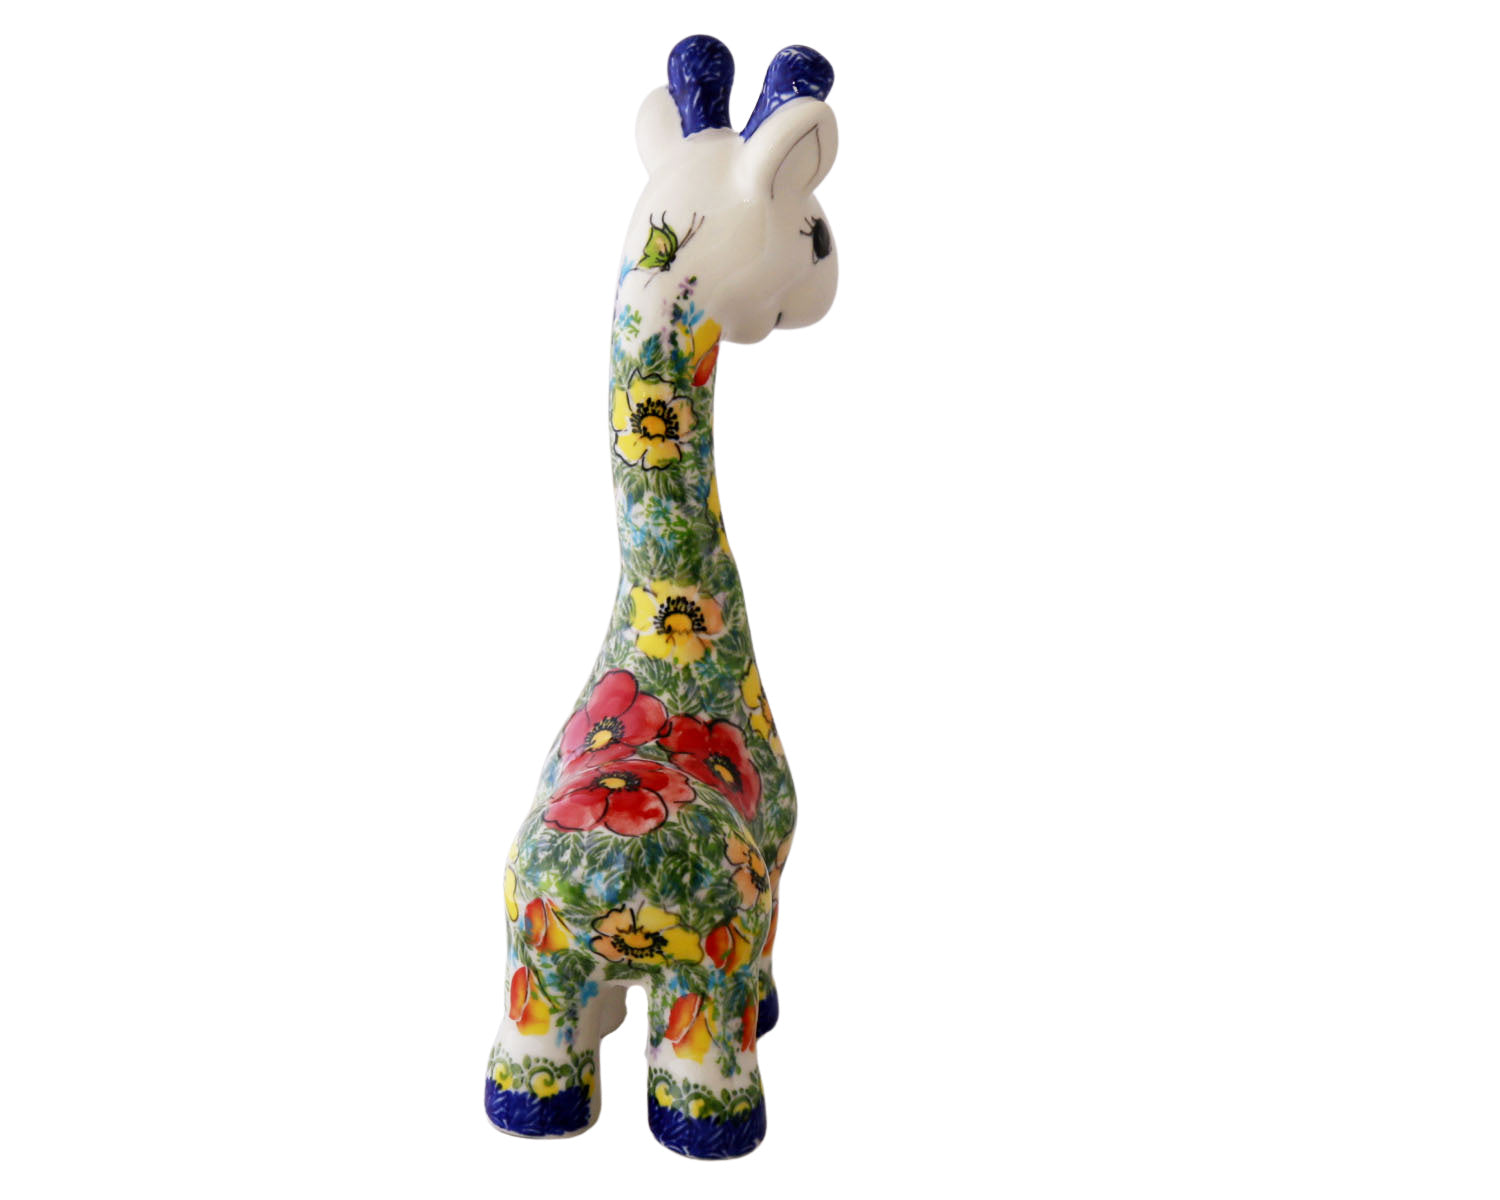 Unikat Tall 11" Giraffe Figure